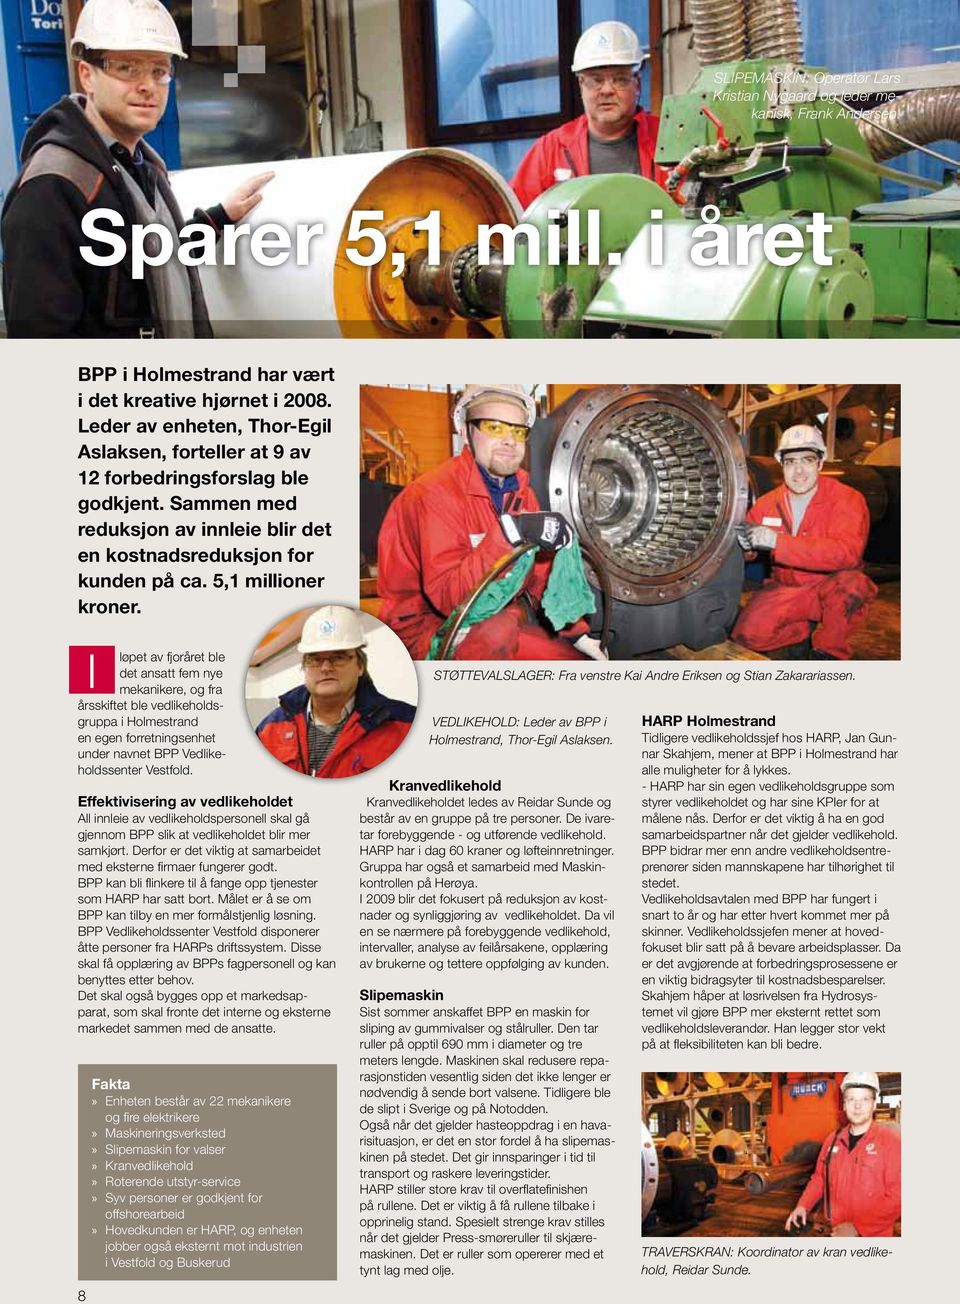 I løpet av fjoråret ble det ansatt fem nye mekanikere, og fra årsskiftet ble vedlikeholdsgruppa i Holmestrand en egen forretningsenhet under navnet BPP Vedlikeholdssenter Vestfold.